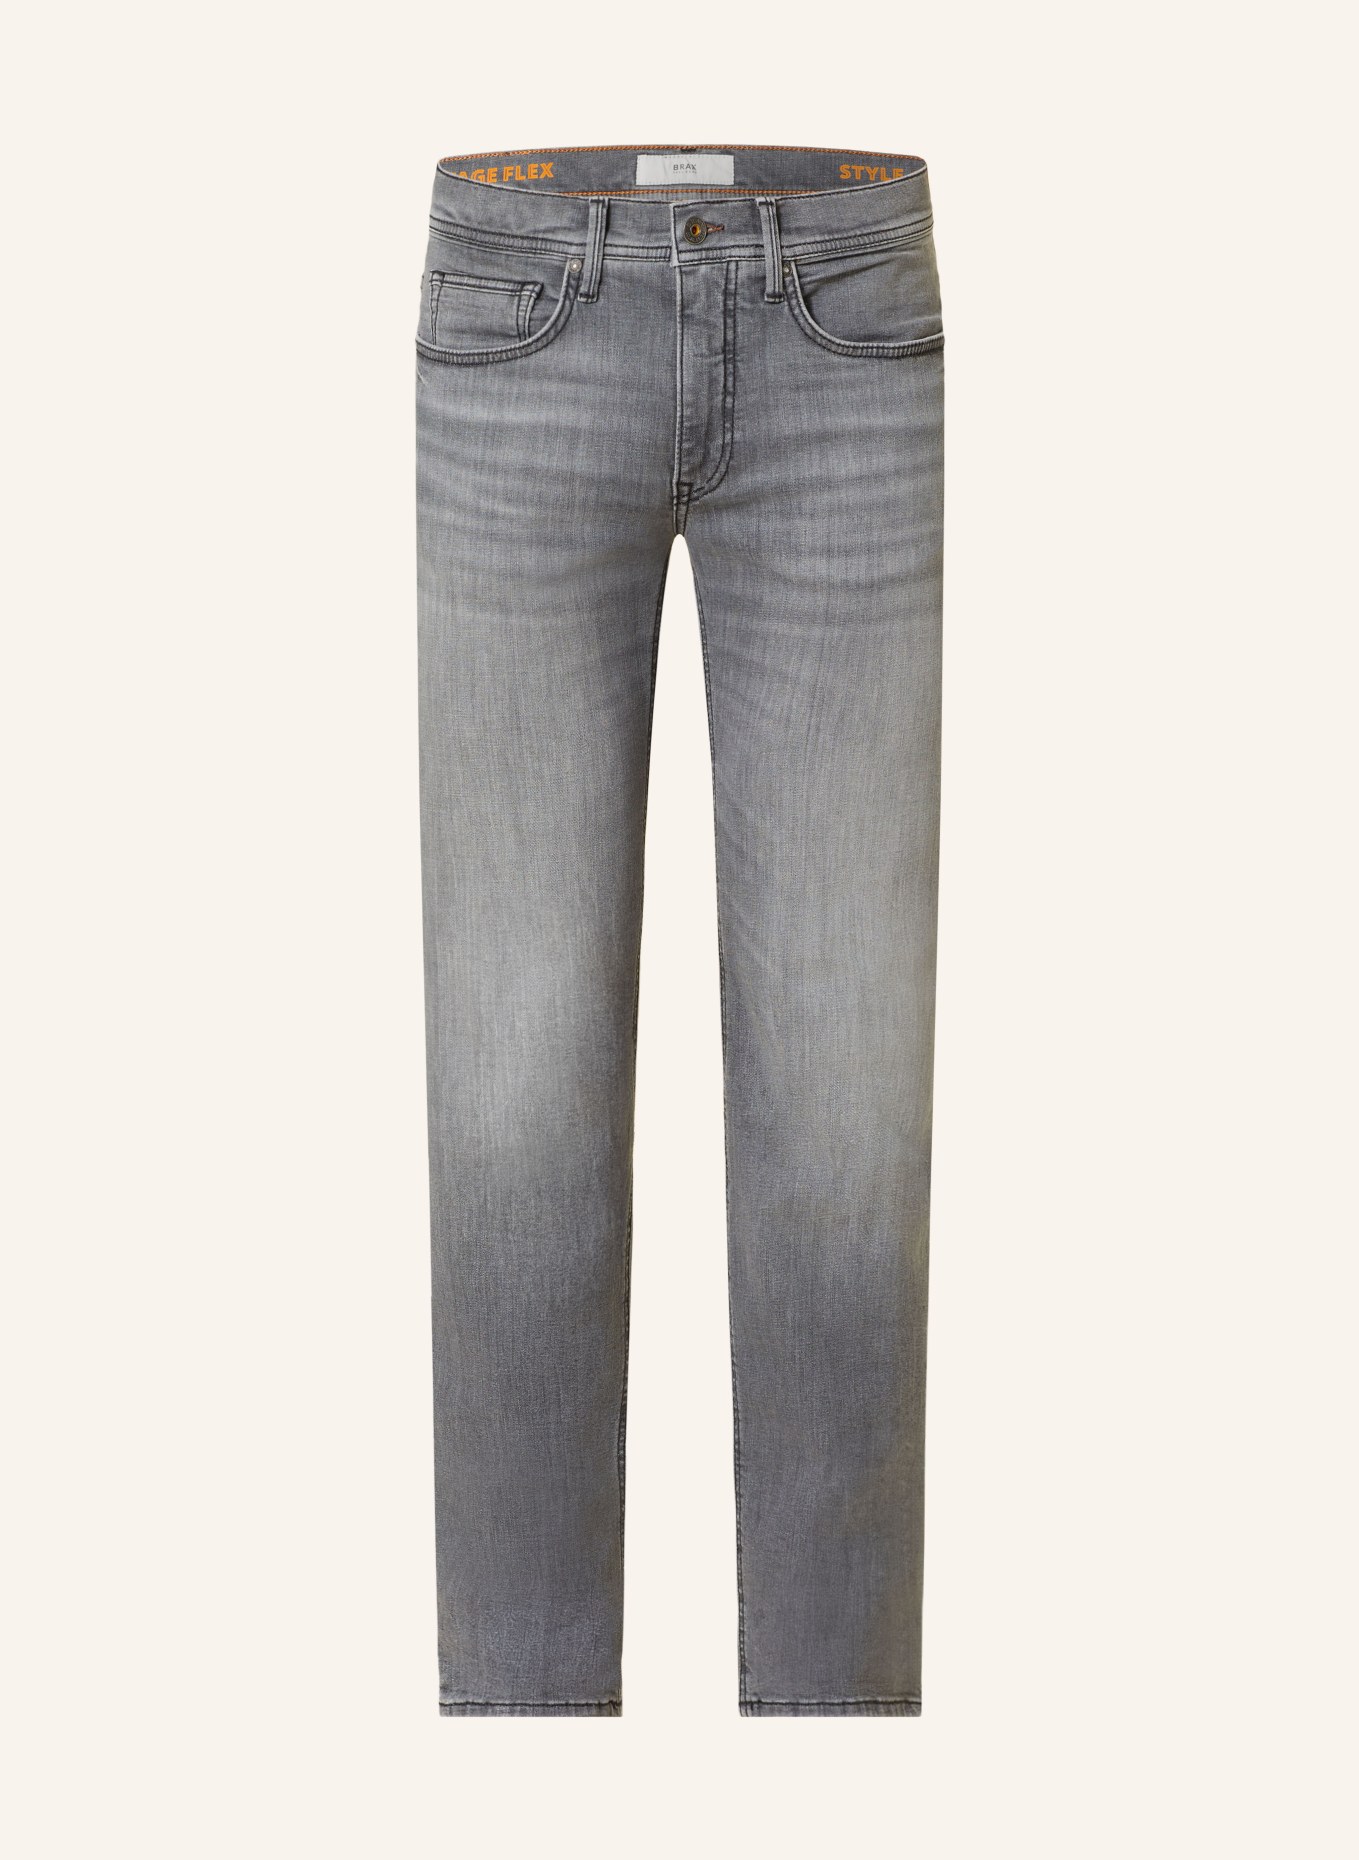 BRAX Jeans CHRIS slim fit, Color: 06 06 (Image 1)